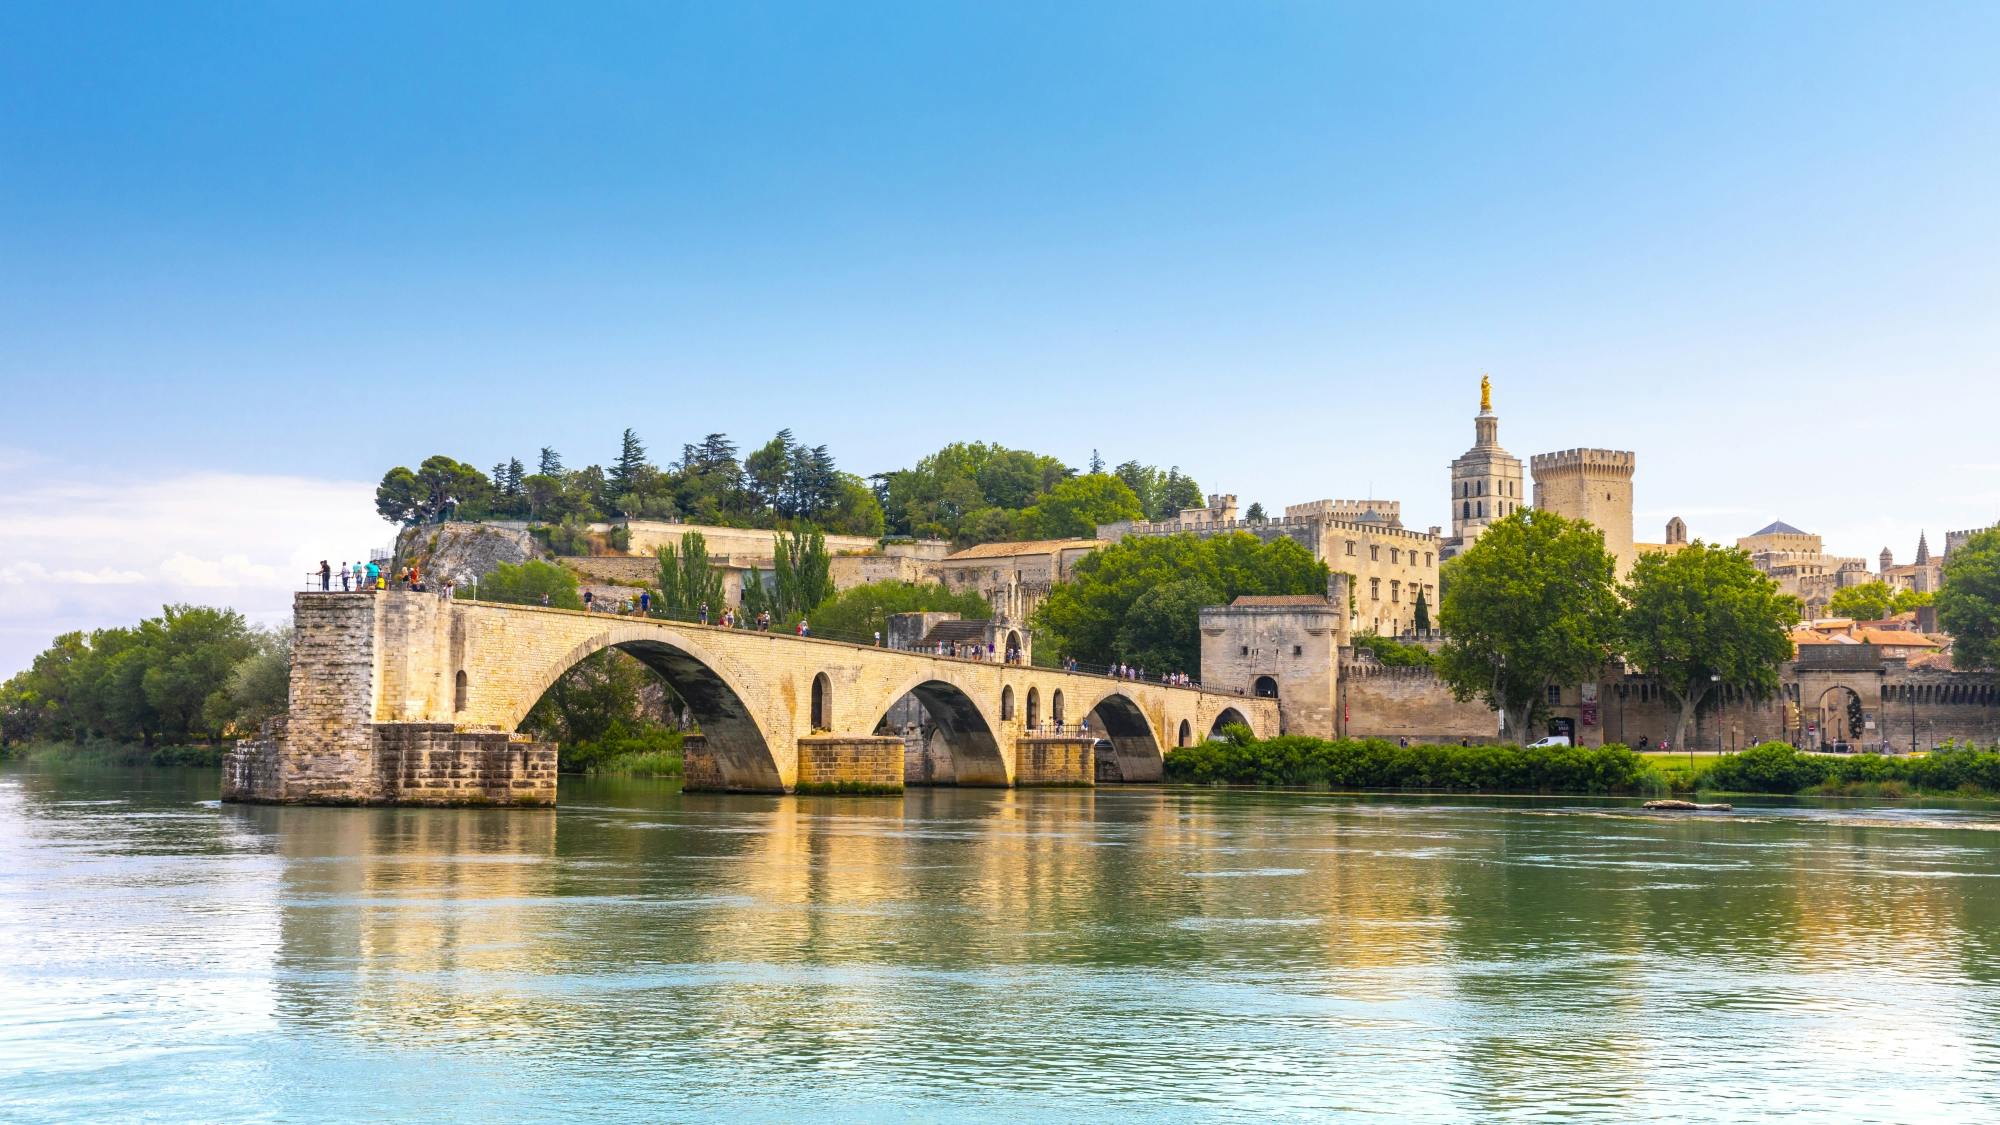 Pont d'Avignon entrance tickets